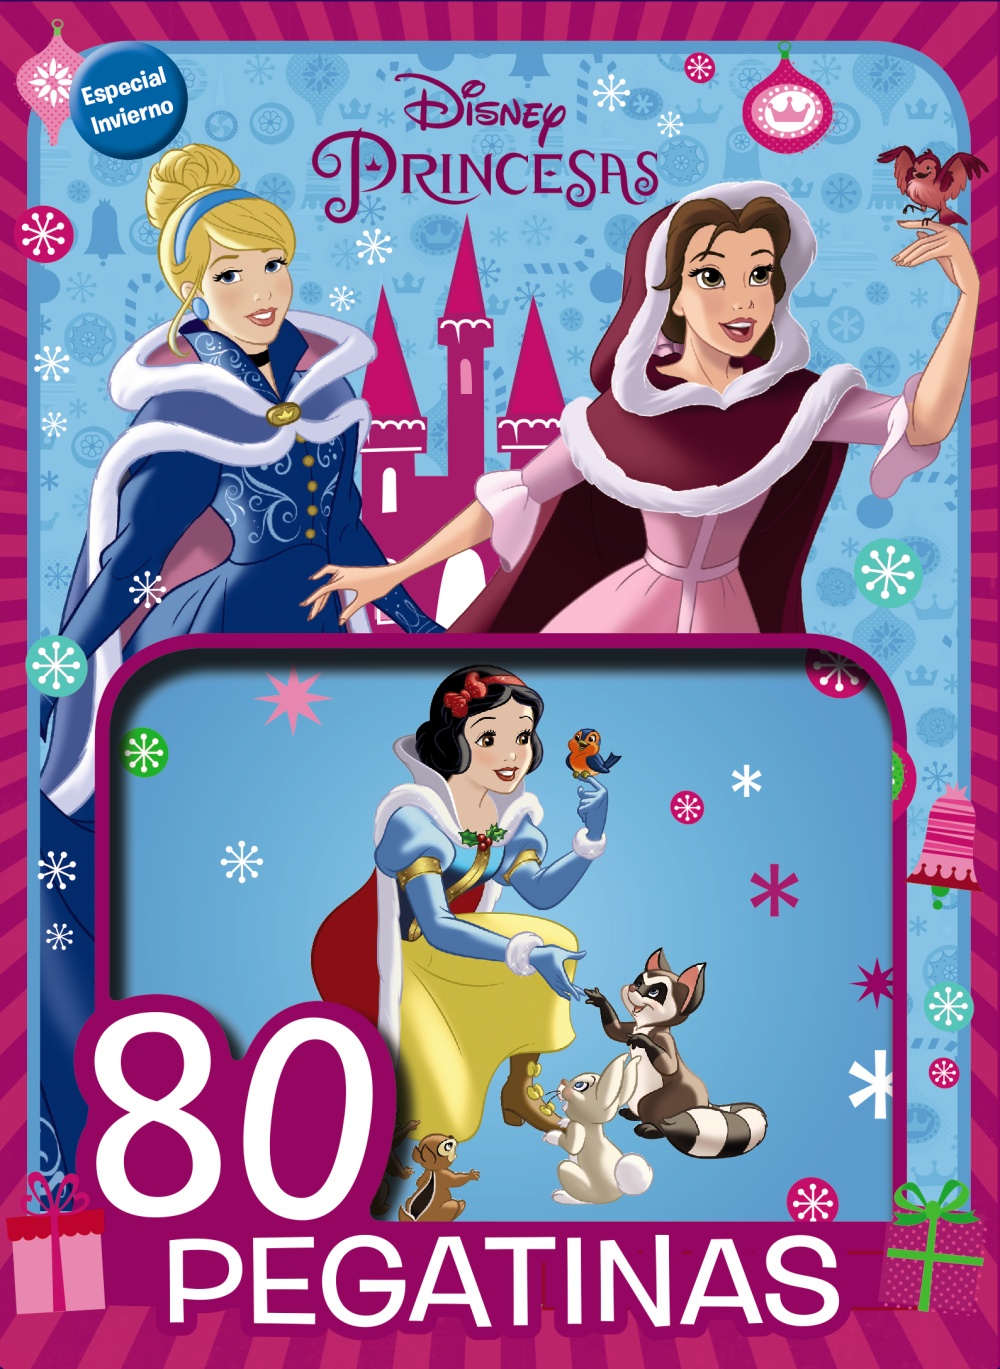 Princesas Disney-especial invierno. 80 Pegatinas Disney - Hablamos de Libros